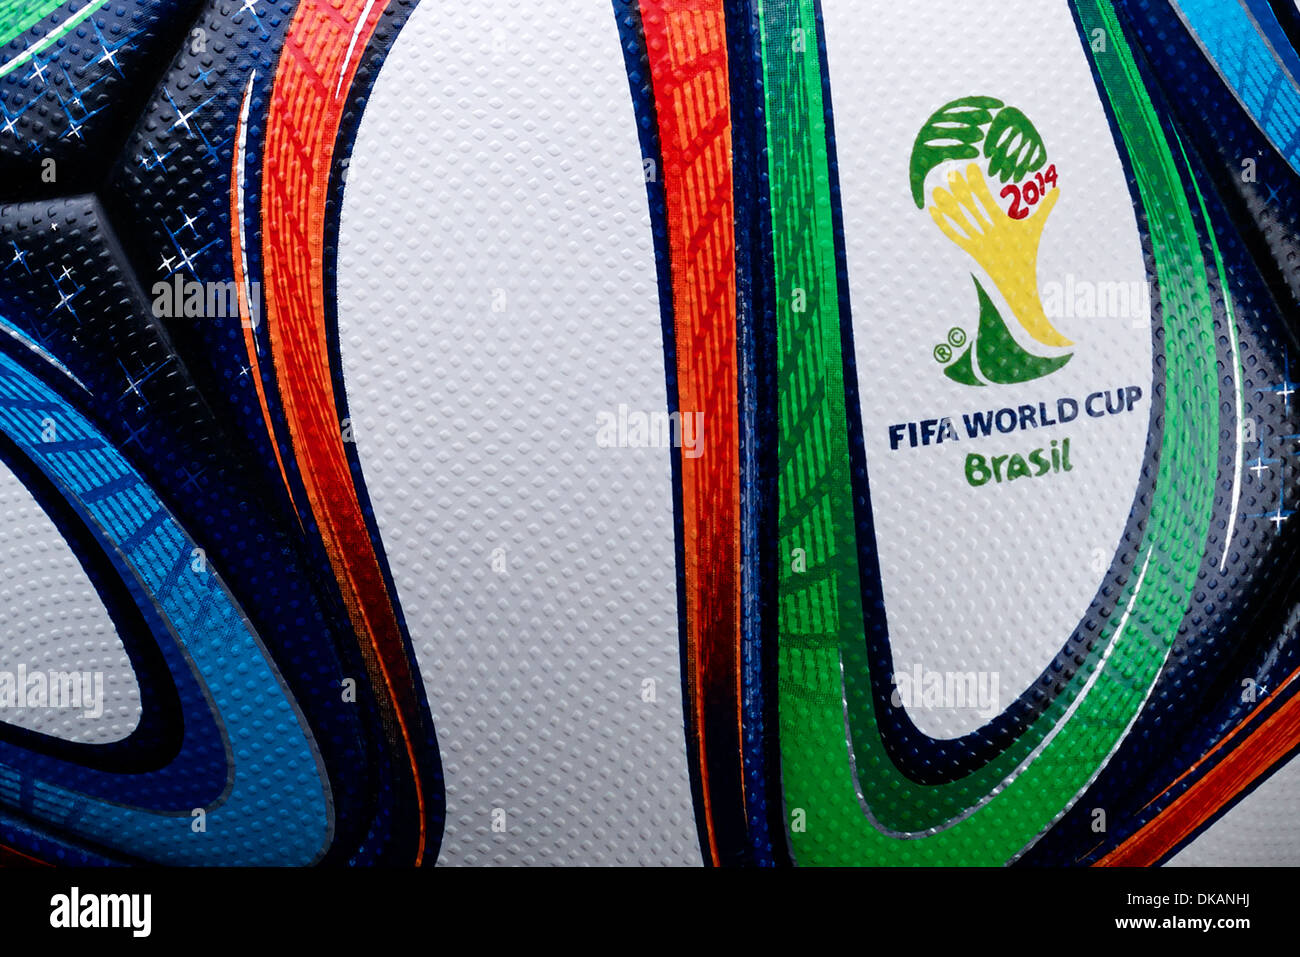 Adidas Brazuca, balón oficial de la Copa Mundial de la FIFA Brasil 2014 Foto de stock